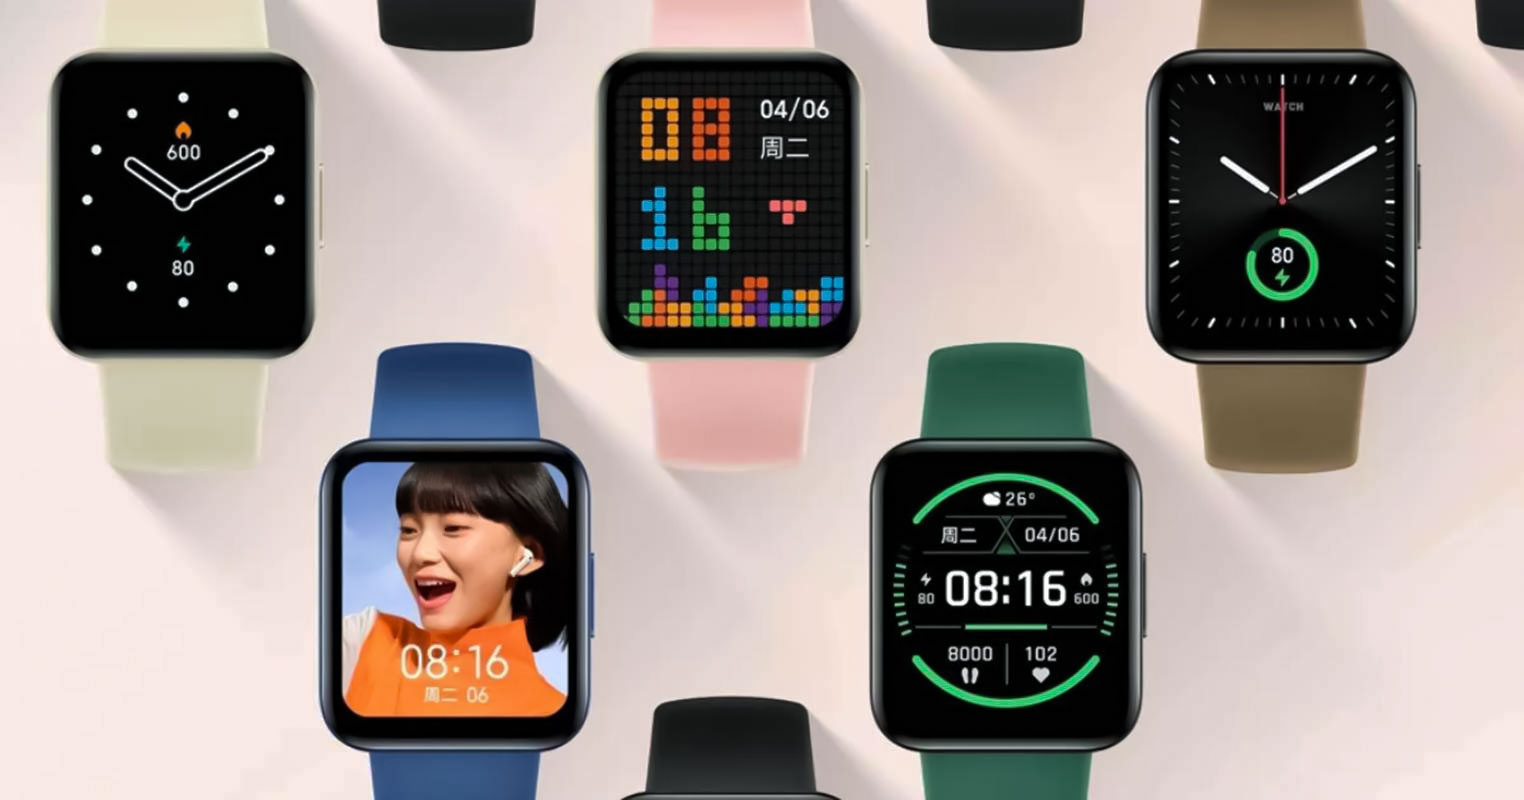 ساعت هوشمند Redmi Watch 2 Lite با قیمت ۷۰ یورو رسما معرفی شد